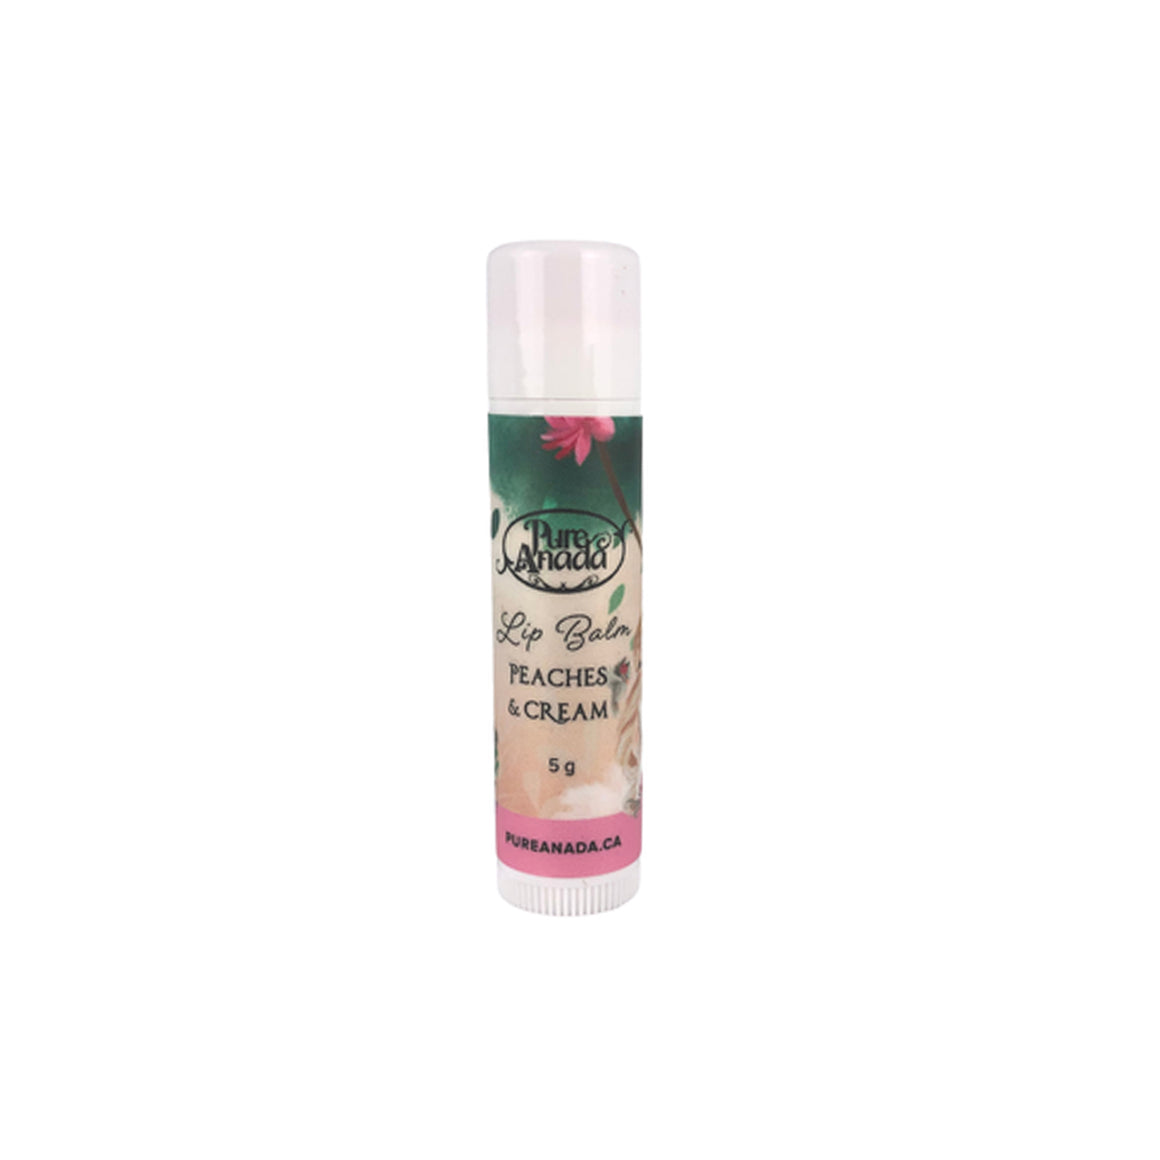 Peaches & Cream Natural Princess Lip Balm 5g - Pure Anada